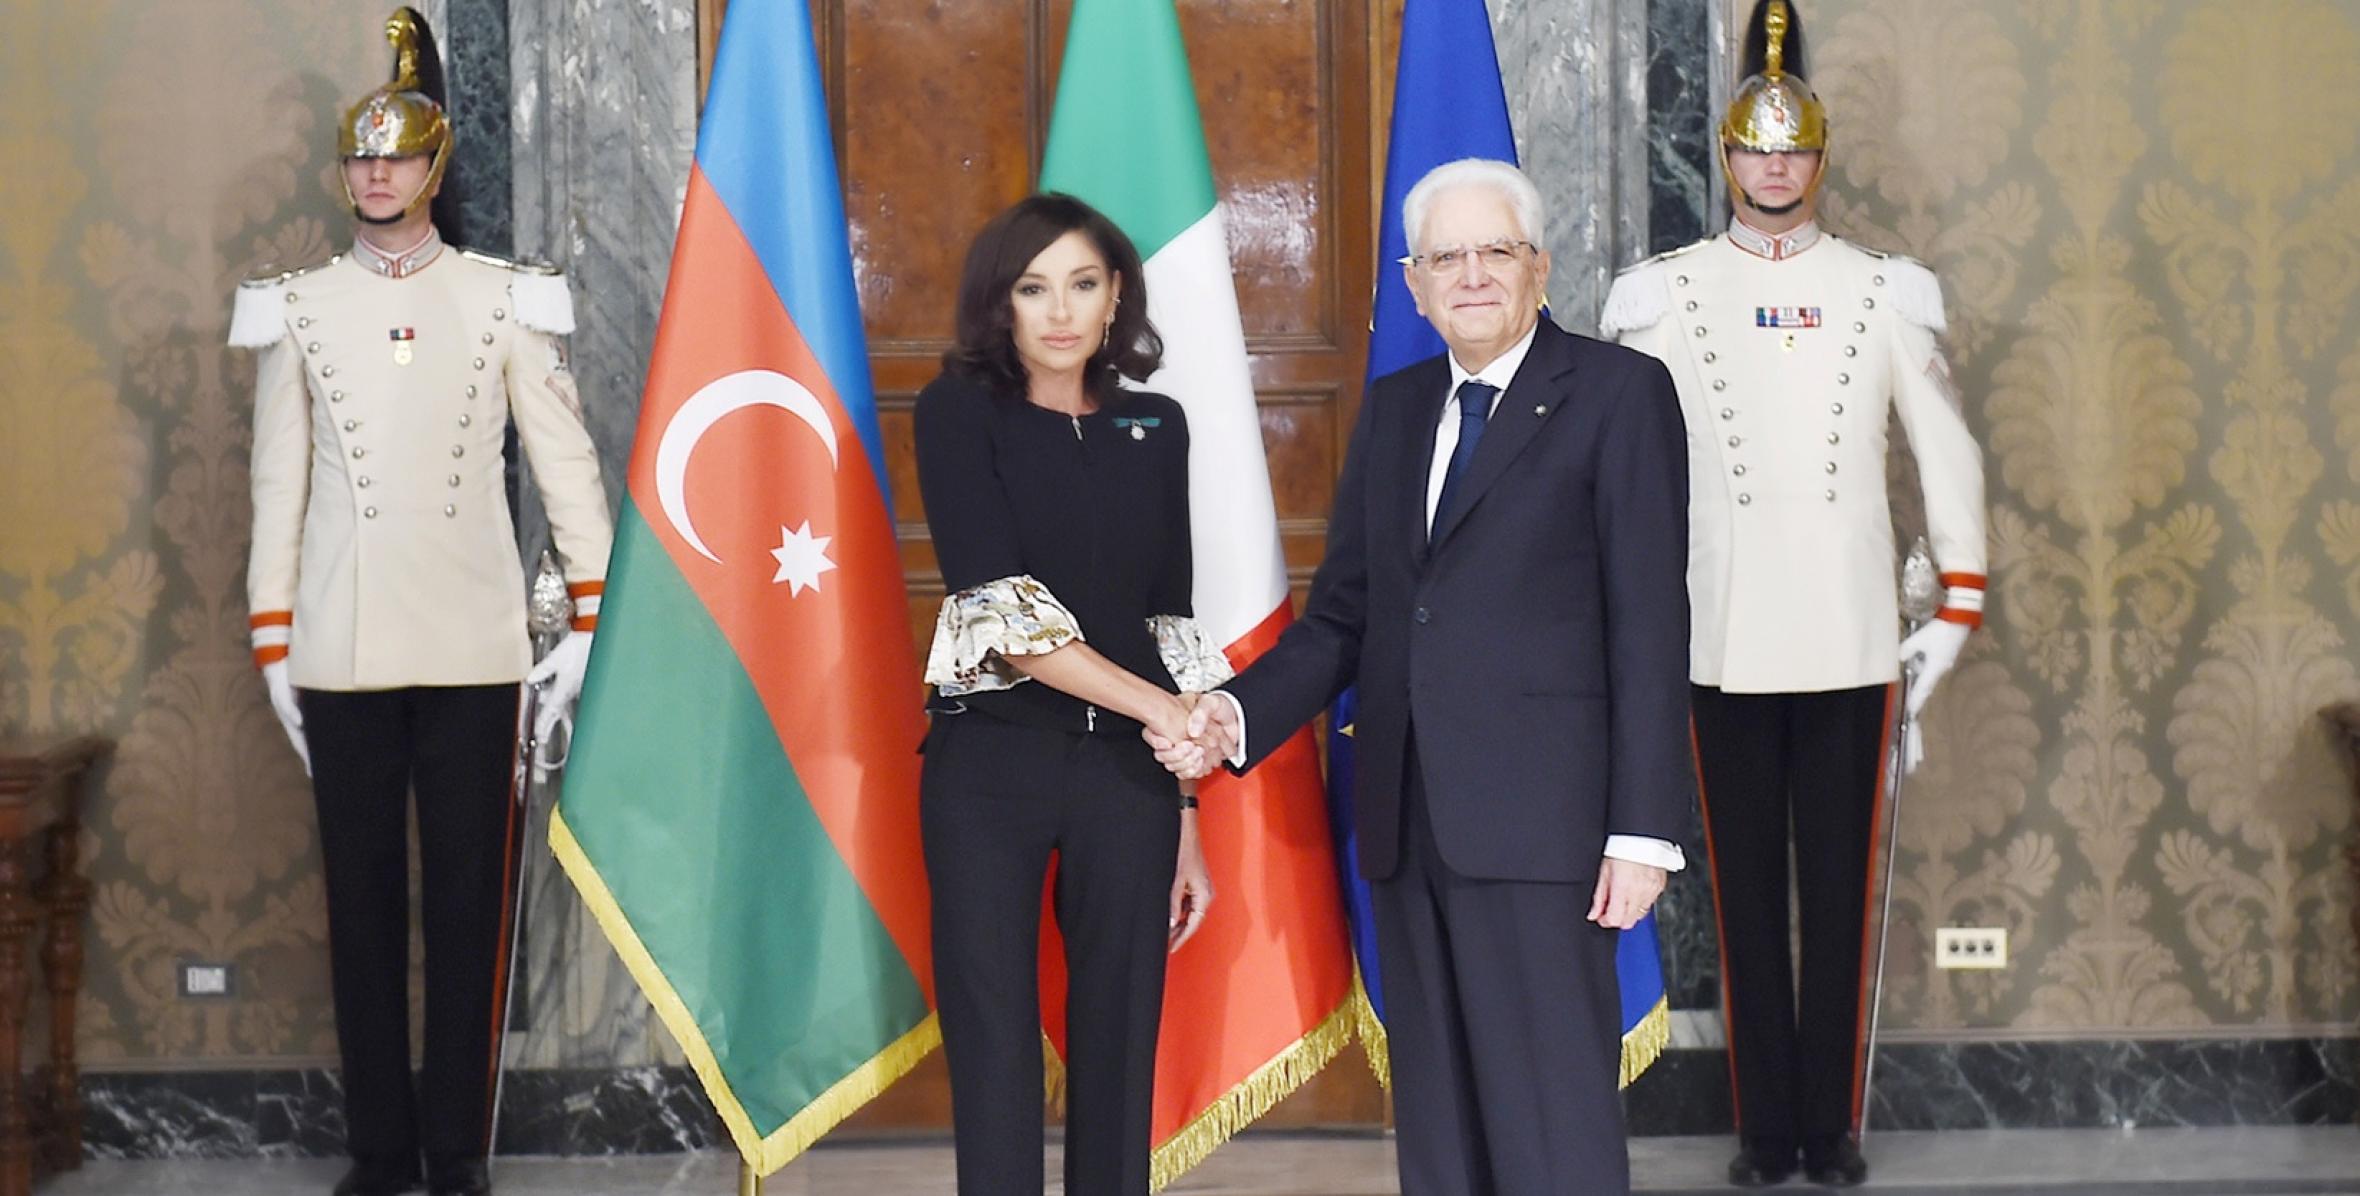 От имени Президента Италии дан официальный обед в честь Первого вице-президента Азербайджана Мехрибан Алиевой